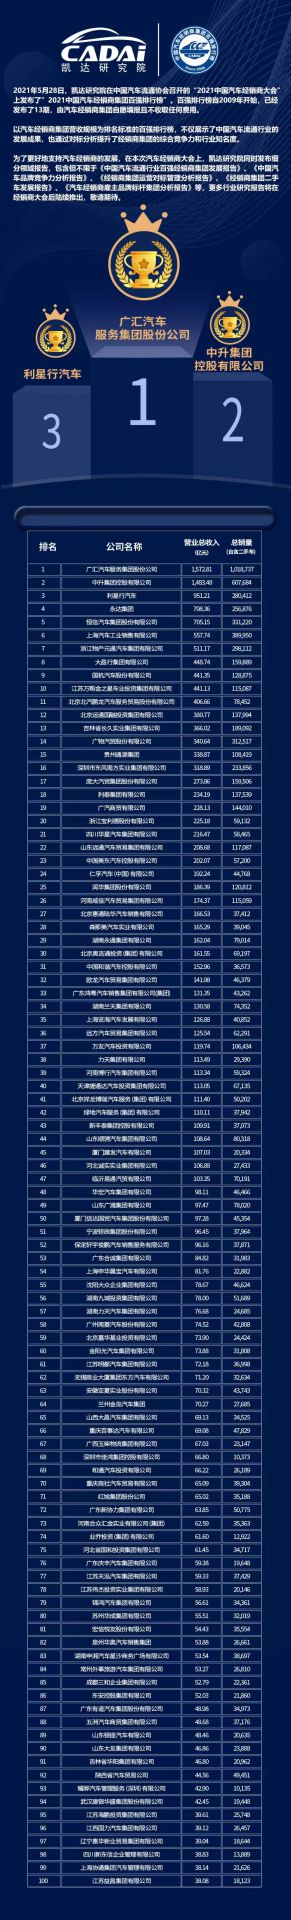 喜讯丨欧洲杯买球竞猜平台荣登2021年中国汽车经销商百强排行榜第33位(图3)